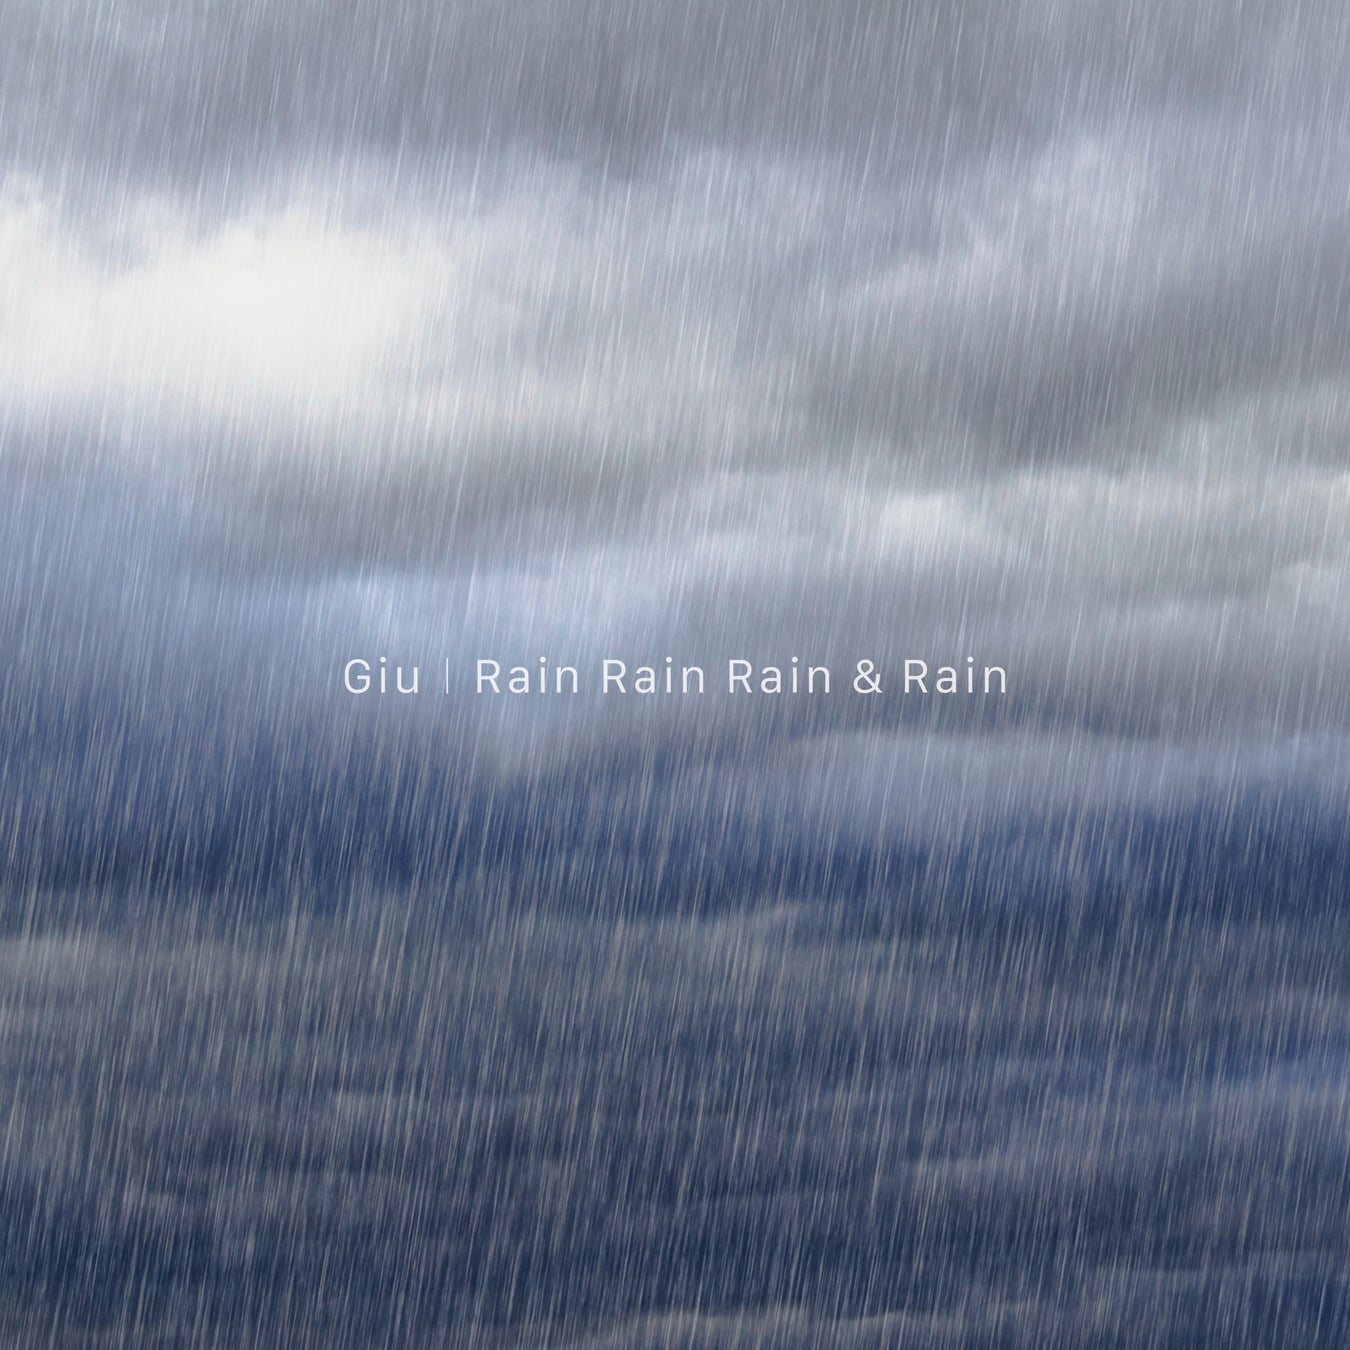 雨とミニマルがテーマのΣKIYMによる新プロジェクト「Rain Rain Rain & Rain」1st Single「Giu」をリリース